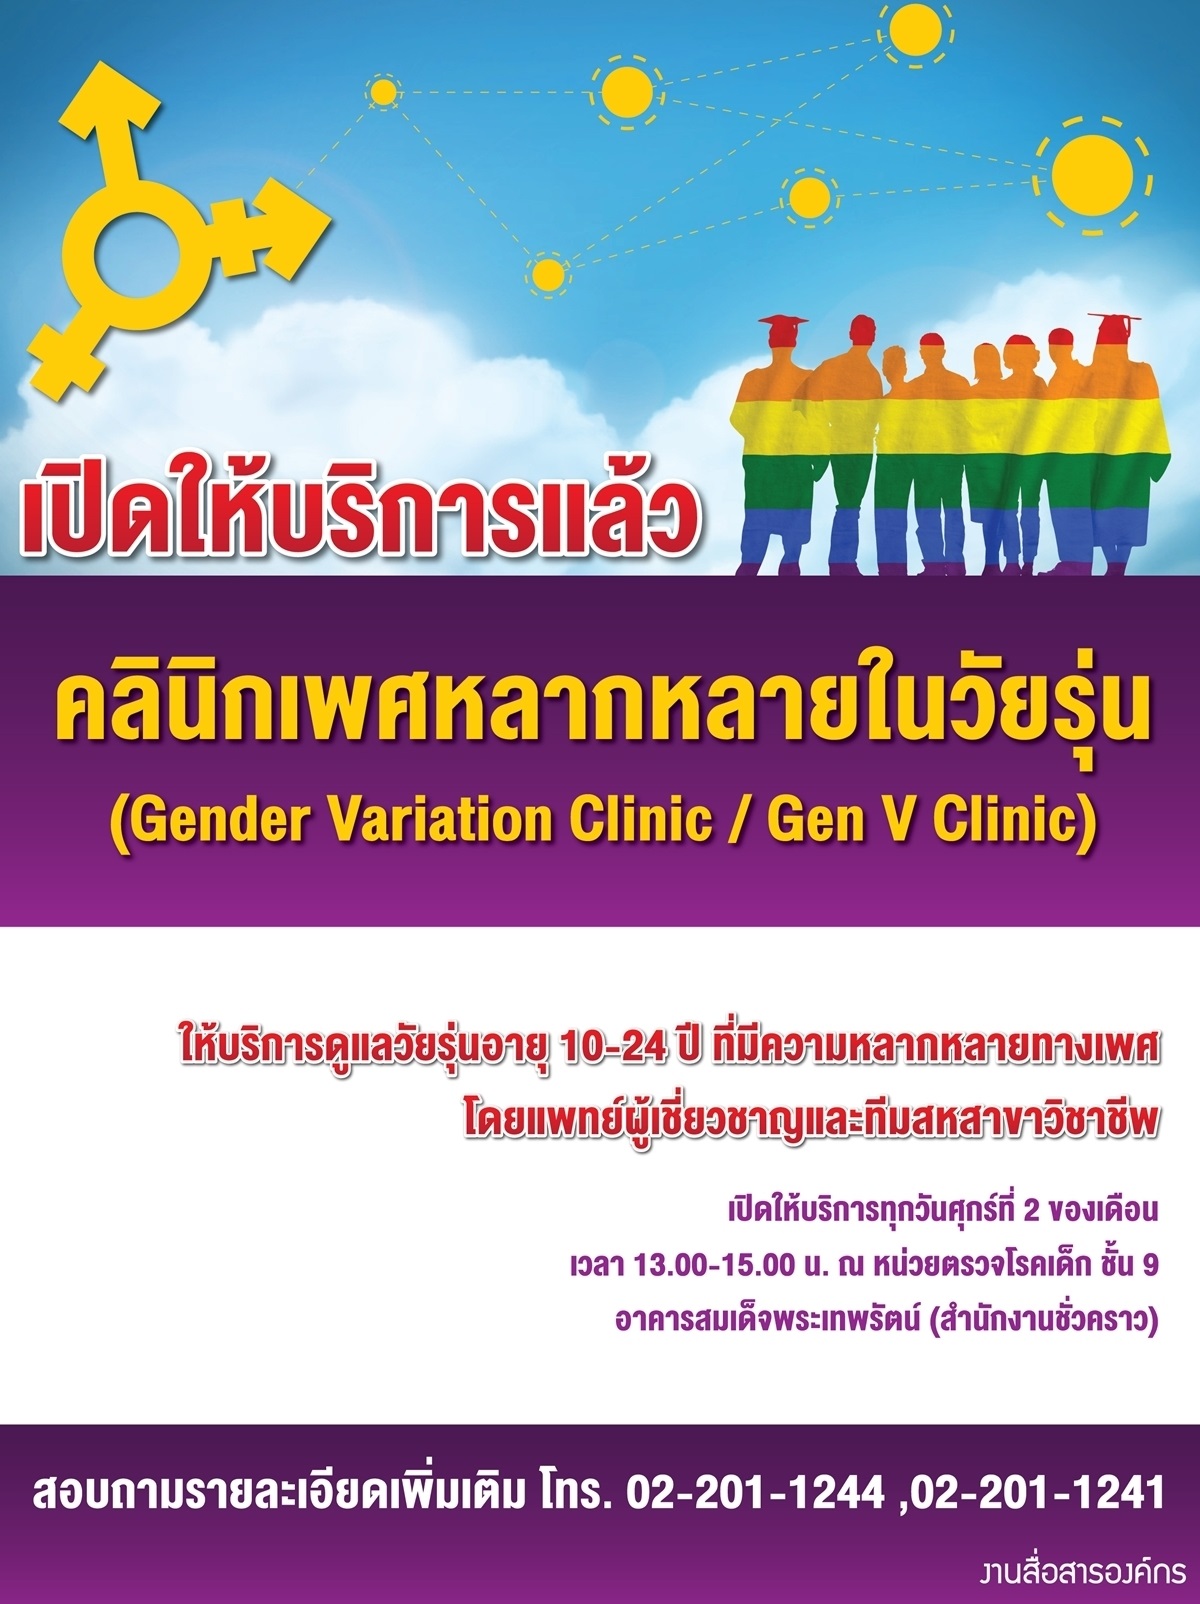 การเปิดให้บริการคลินิกเพศหลากหลายในวัยรุ่น (Gender Variation Clinic / Gen V Clinic)